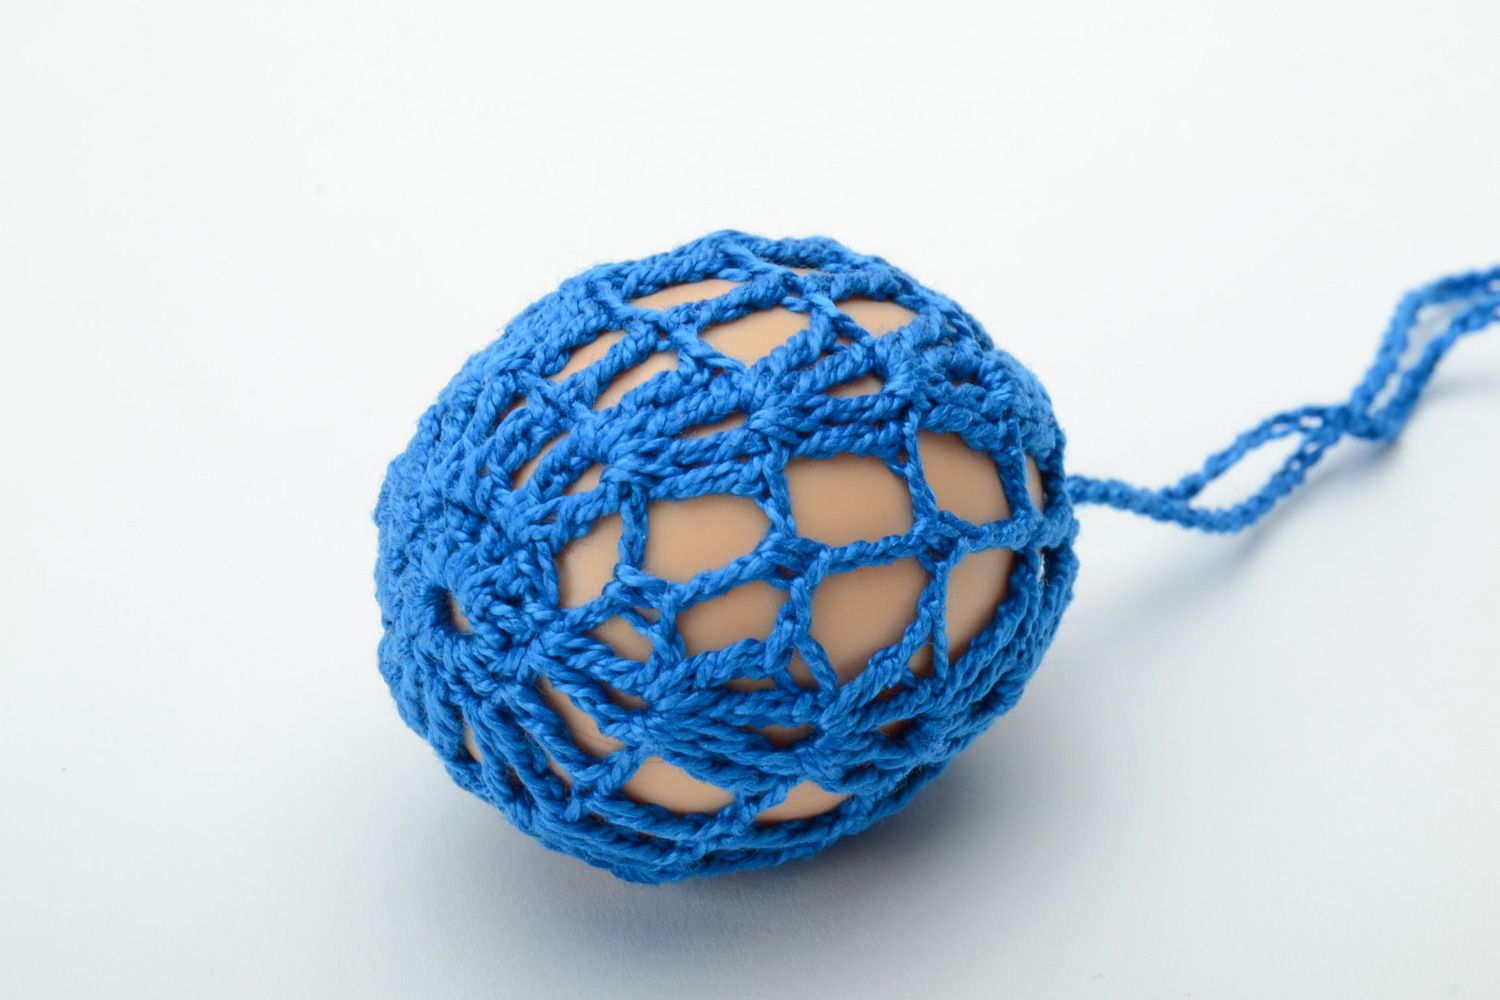 Пасхальное яйцо декоративное в ажурном синем чехле фото 2